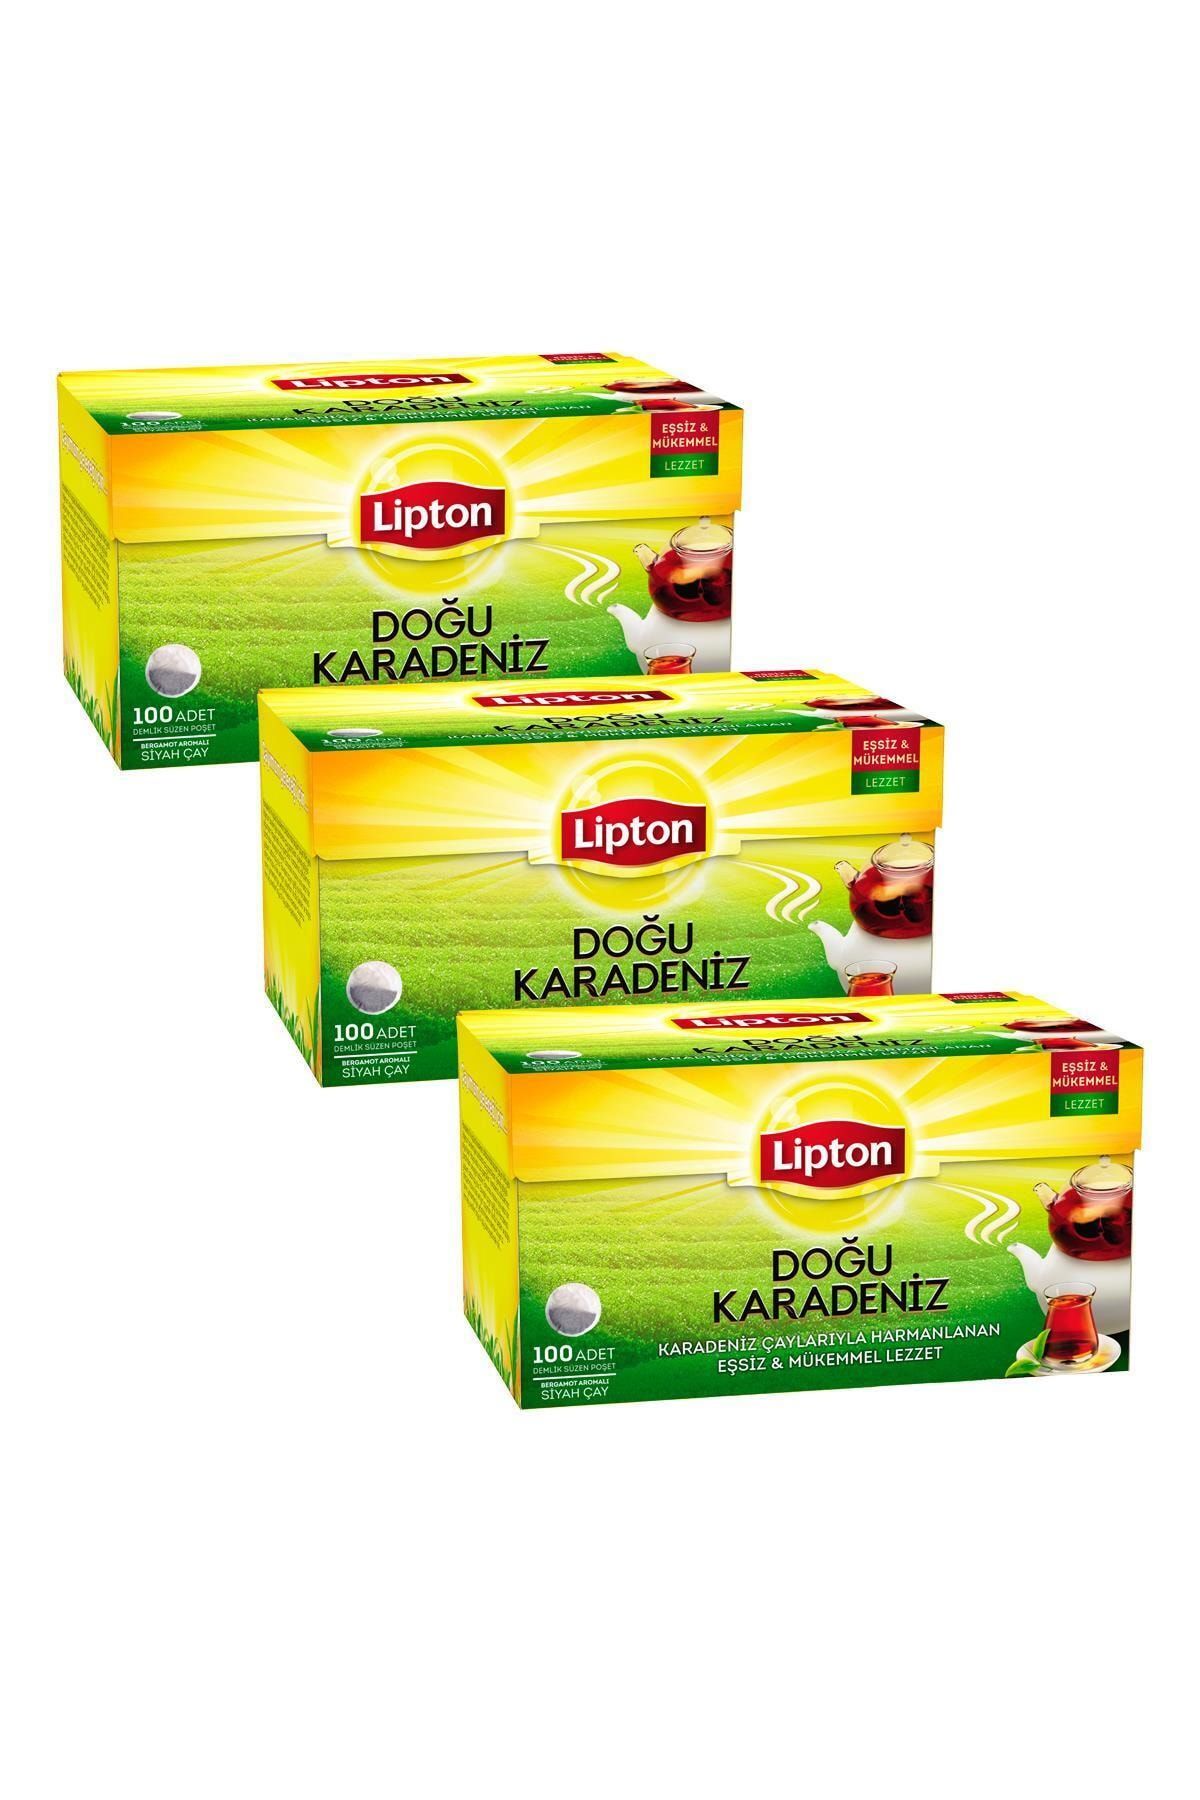 Lipton Doğu Karadeniz Demlik Poşet Çay 100'lü X 3 Adet